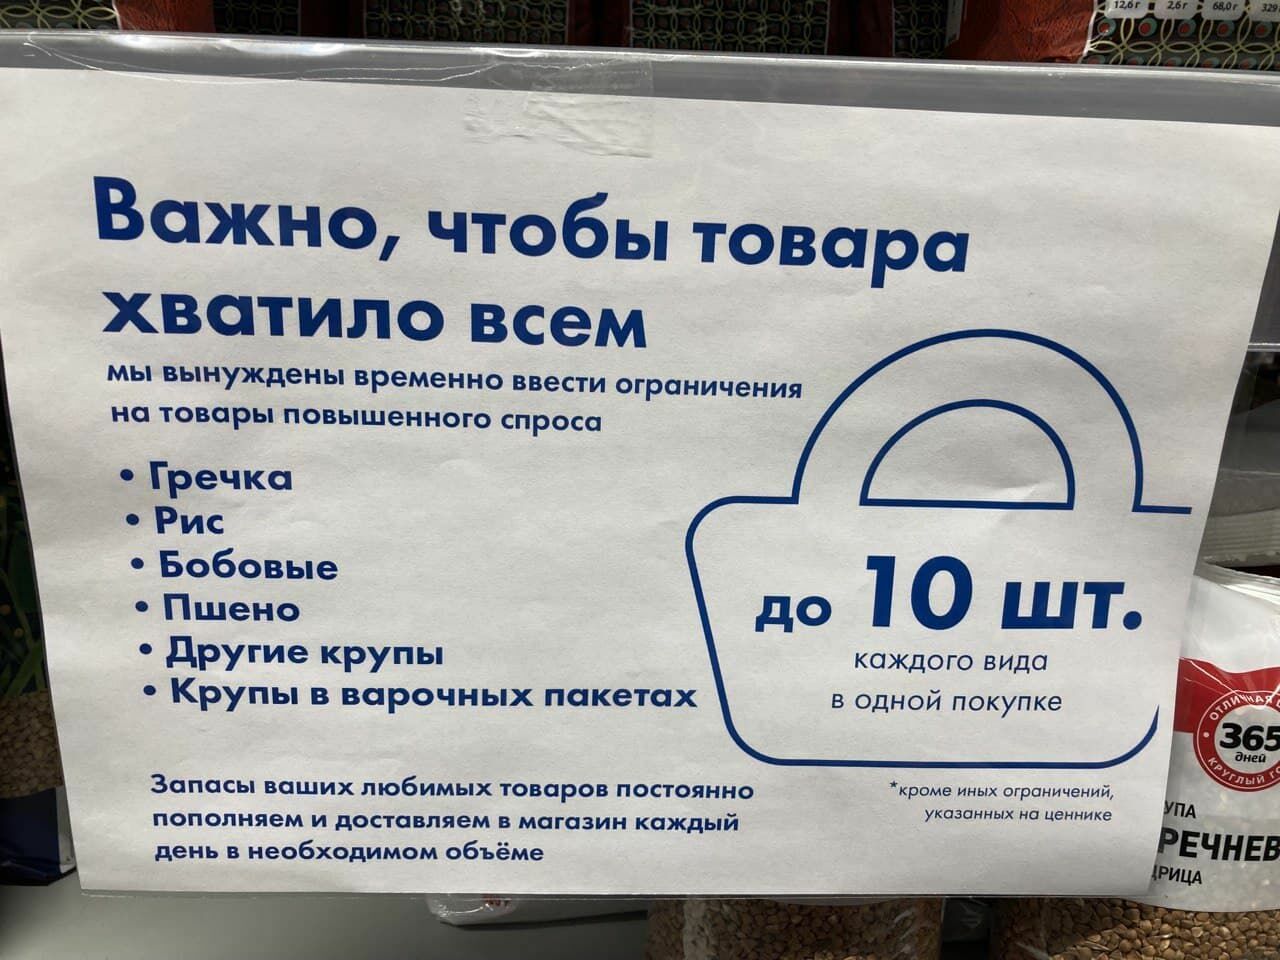 Фото дня: российские магазины ограничивают покупки ходовых товаров